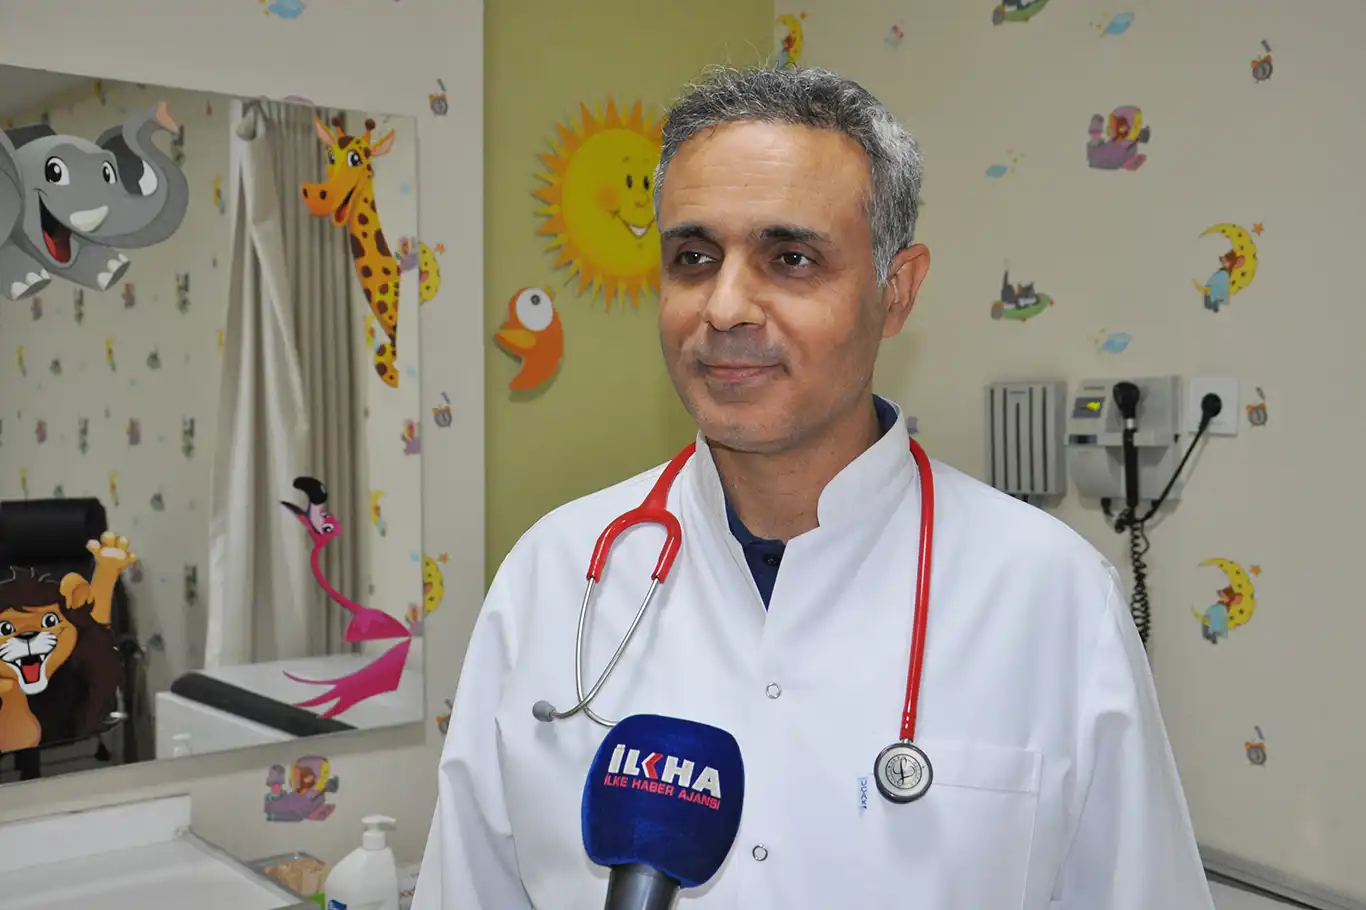 Doç. Dr. Uluca, gereksiz antibiyotik kullanımının zararlarına dikkat çekti